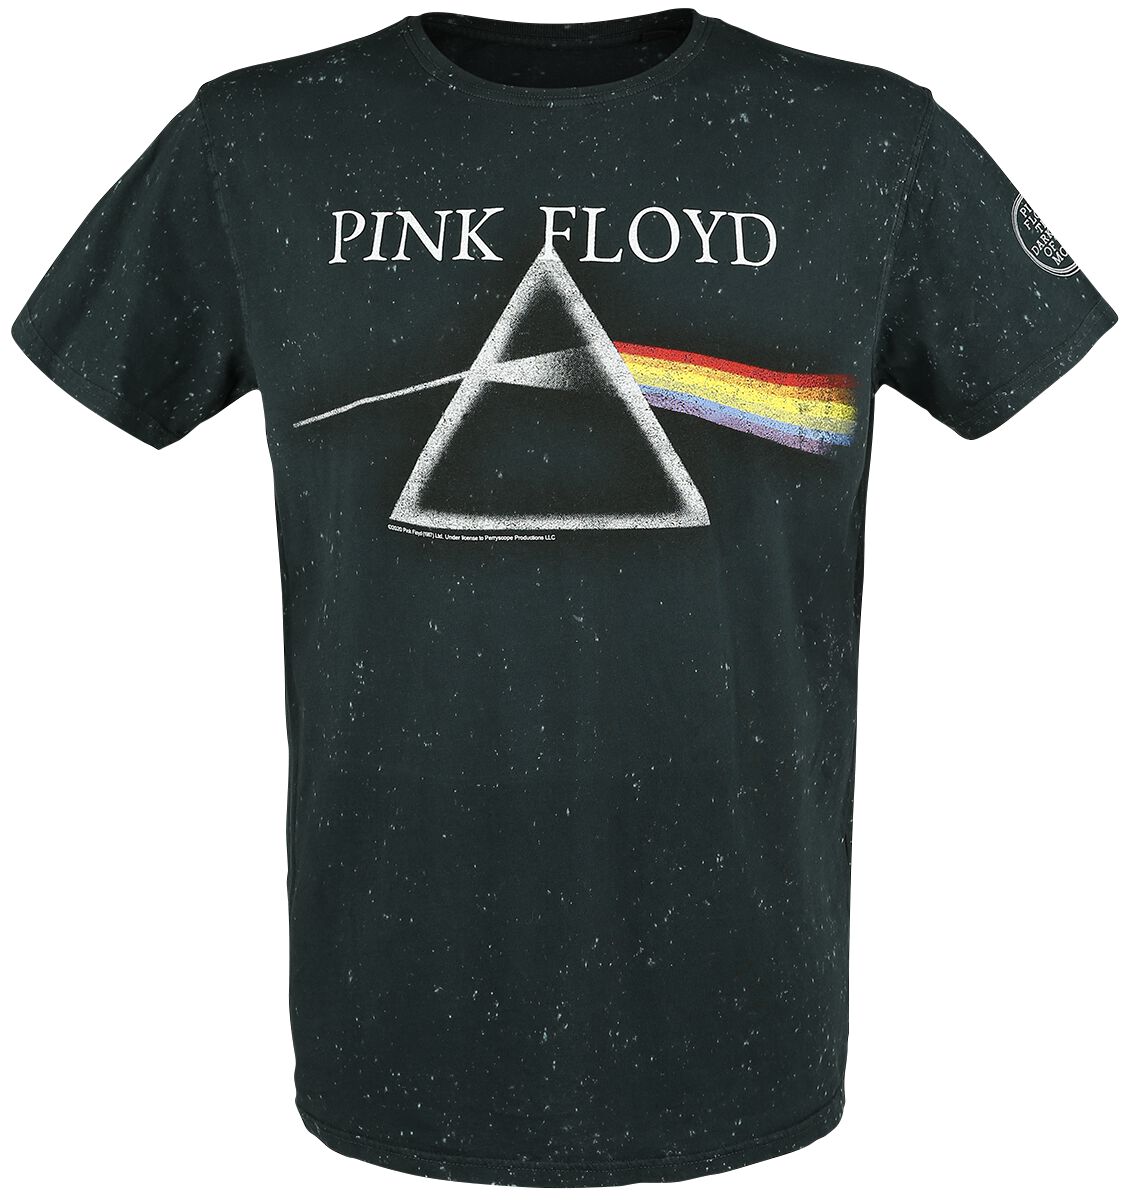 Pink Floyd T-Shirt - The Dark Side Of The Moon - S bis 3XL - für Männer - Größe S - anthrazit  - EMP exklusives Merchandise!